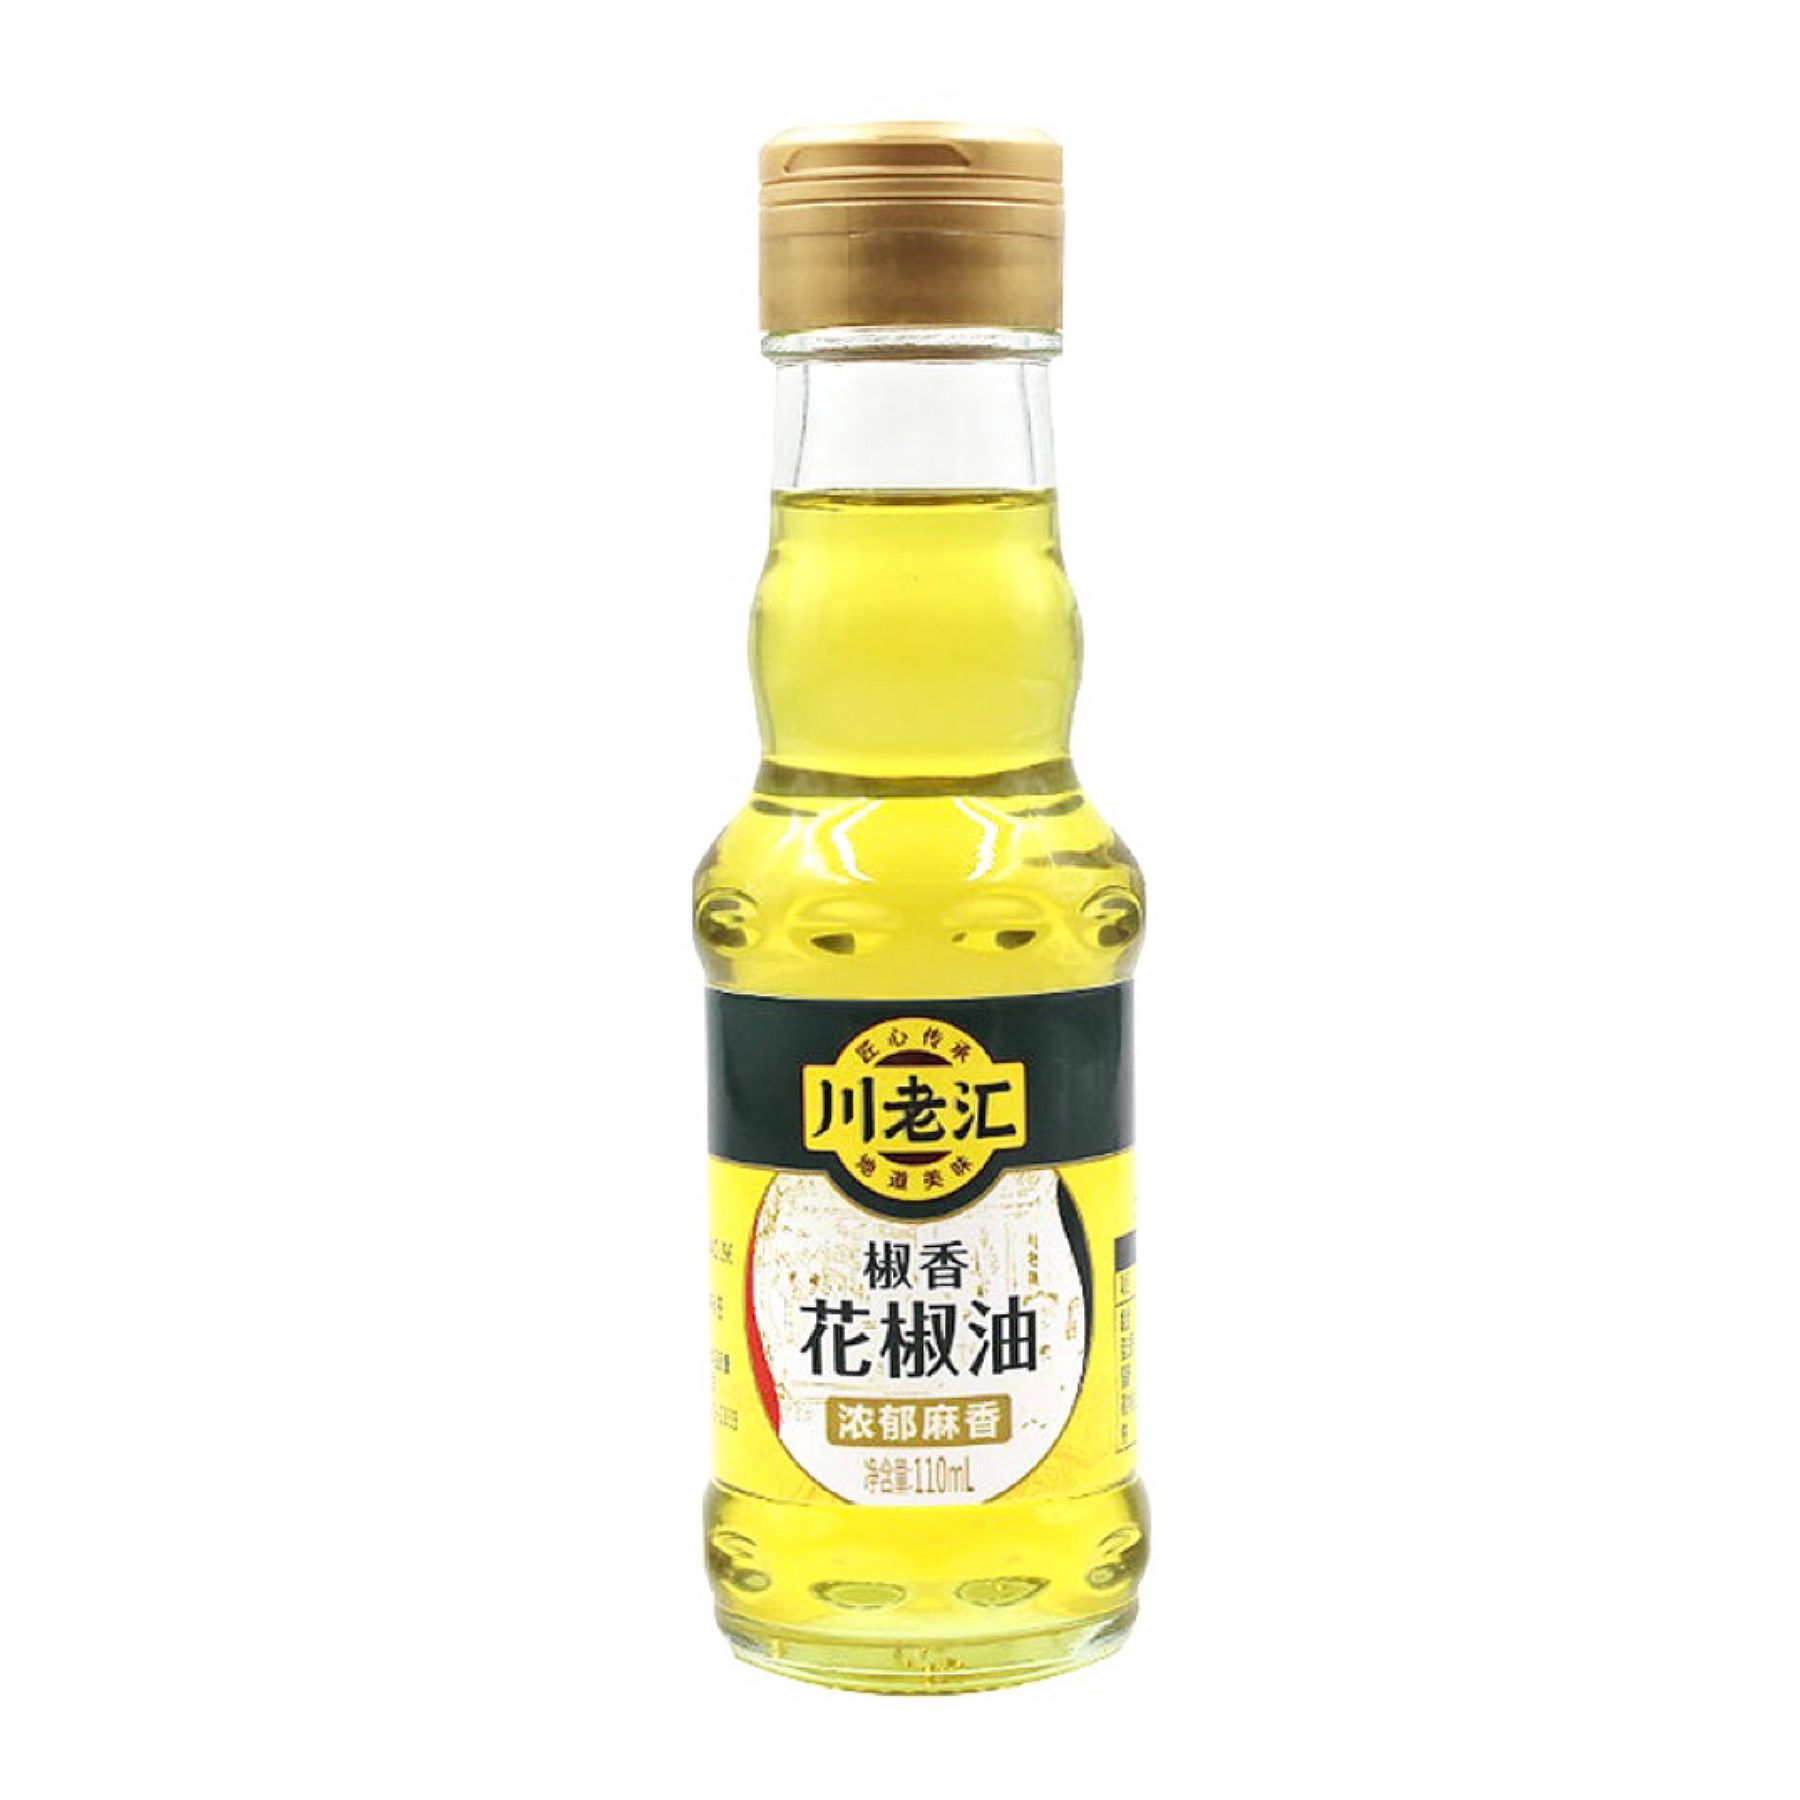 CLH Sichuan Pepper Oil 110ml